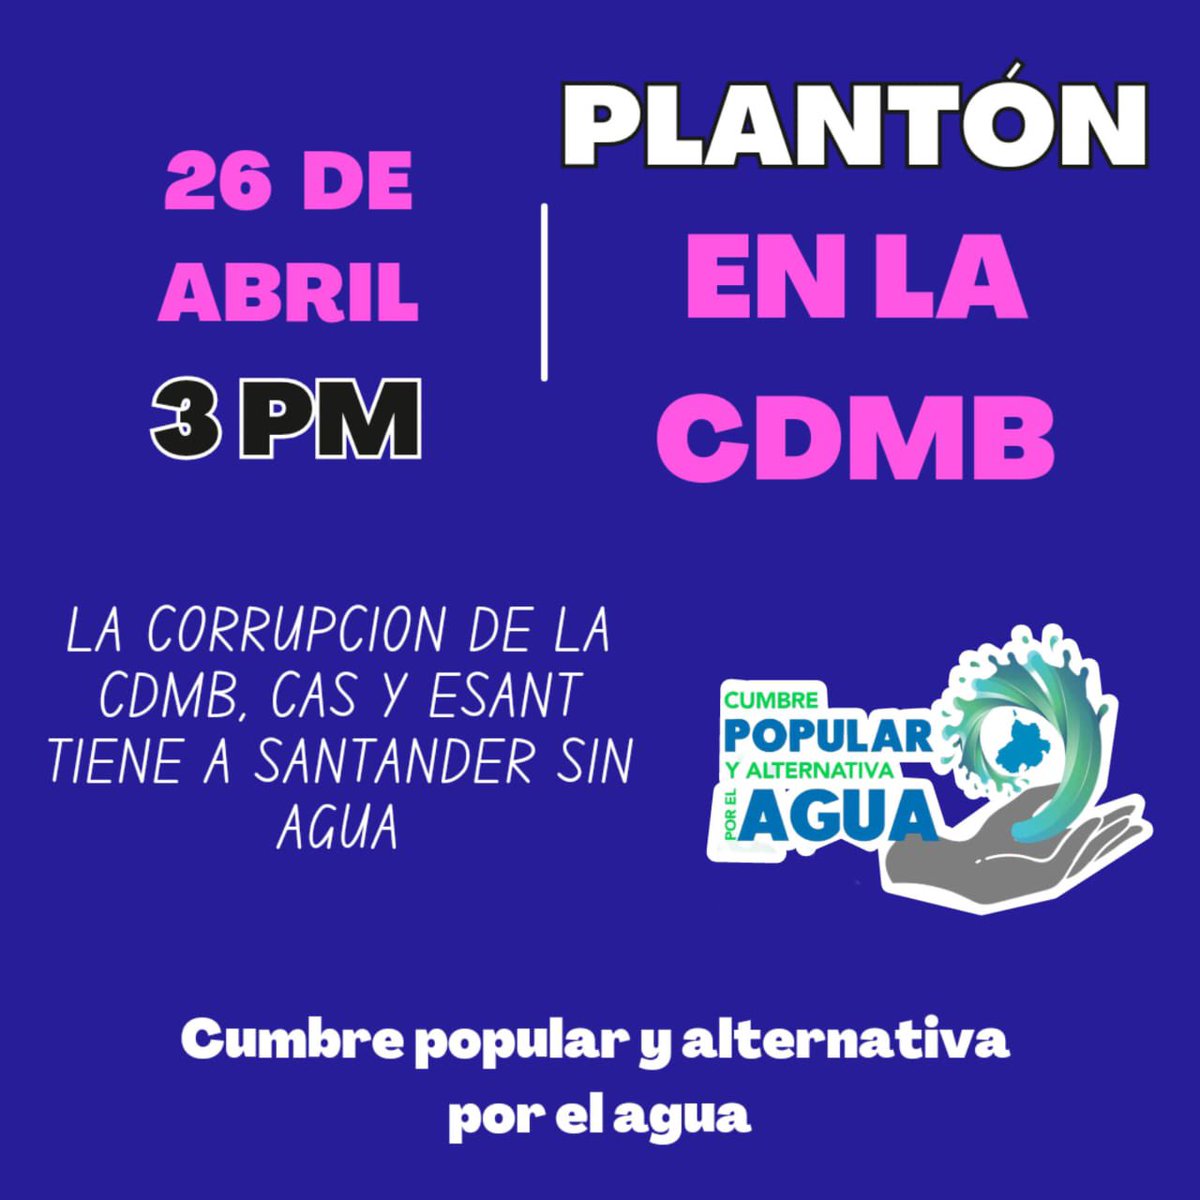 HOY plantón frente a la @CARCDMB 💦 La Cumbre a Popular y Alternativa por el Agua que duró dos días, cierra el encuentro con esta urgente acción #Bucaramanga #Santander @CaracolBga @BLUSantanderes @vanguardiacom @CanalTRO @RCNBga @Loquepasaenbuca